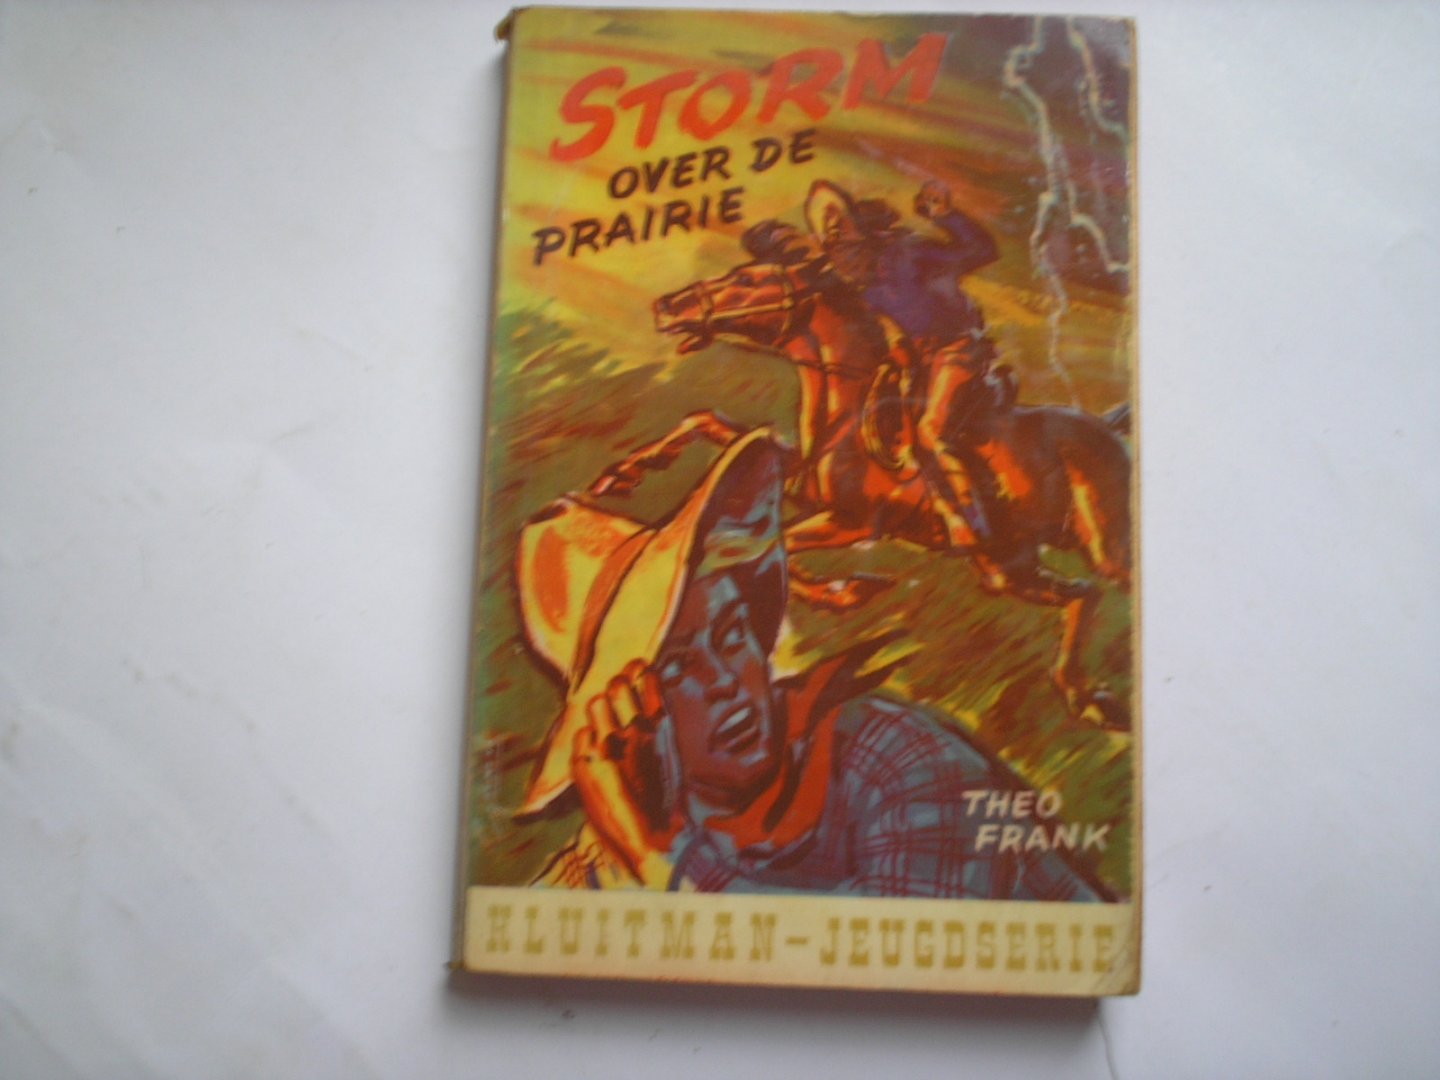 Frank, Theo - Storm over de Prairie